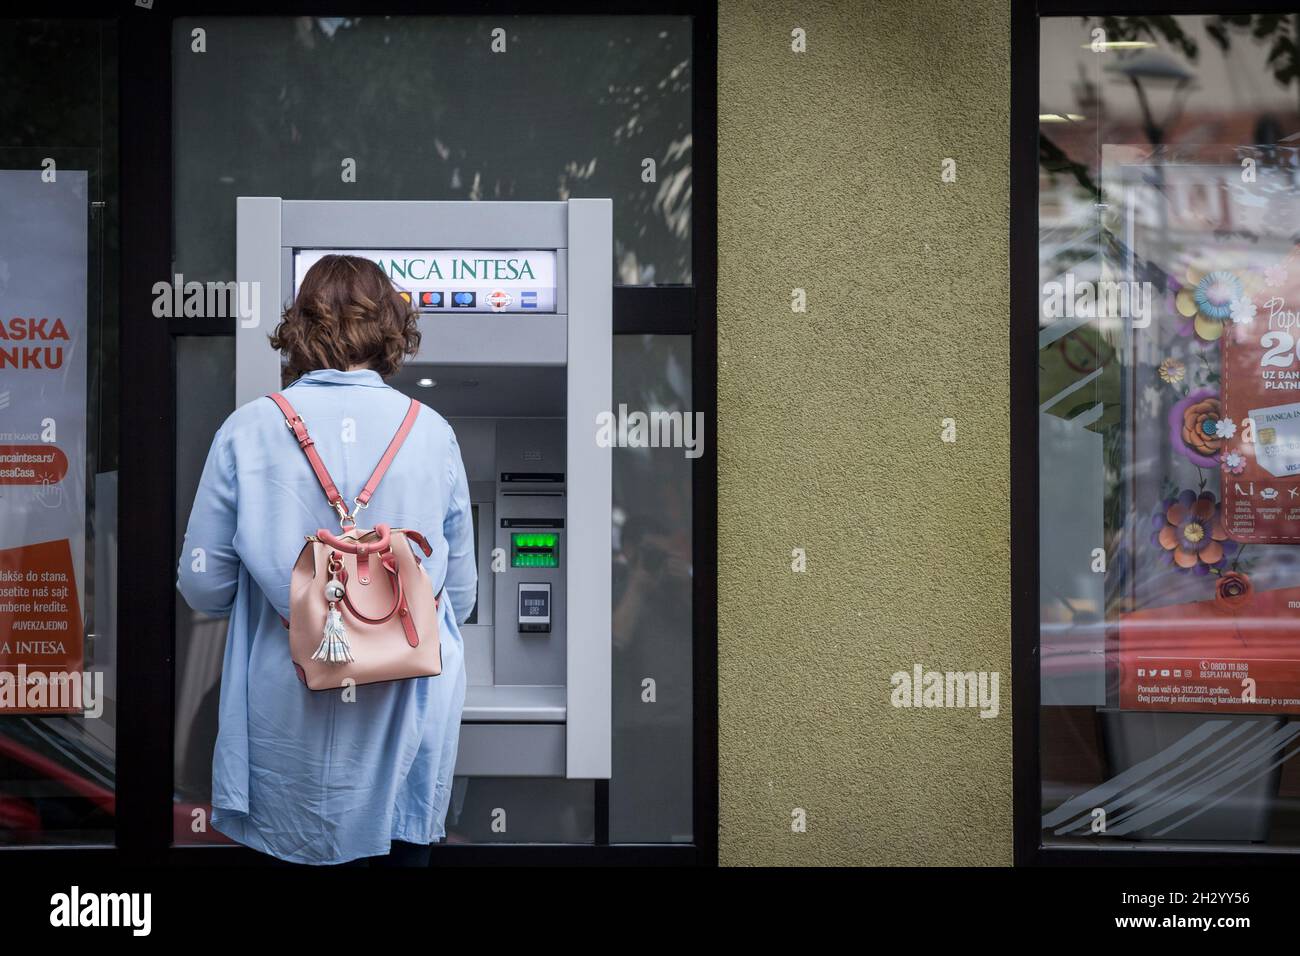 Bild einer Frau, die die Dienste der Banca Intesa nutzt, Bargeld und Geld im Stadtzentrum von Belgrad, serbien, mit einem geldautomaten abzieht. Stockfoto